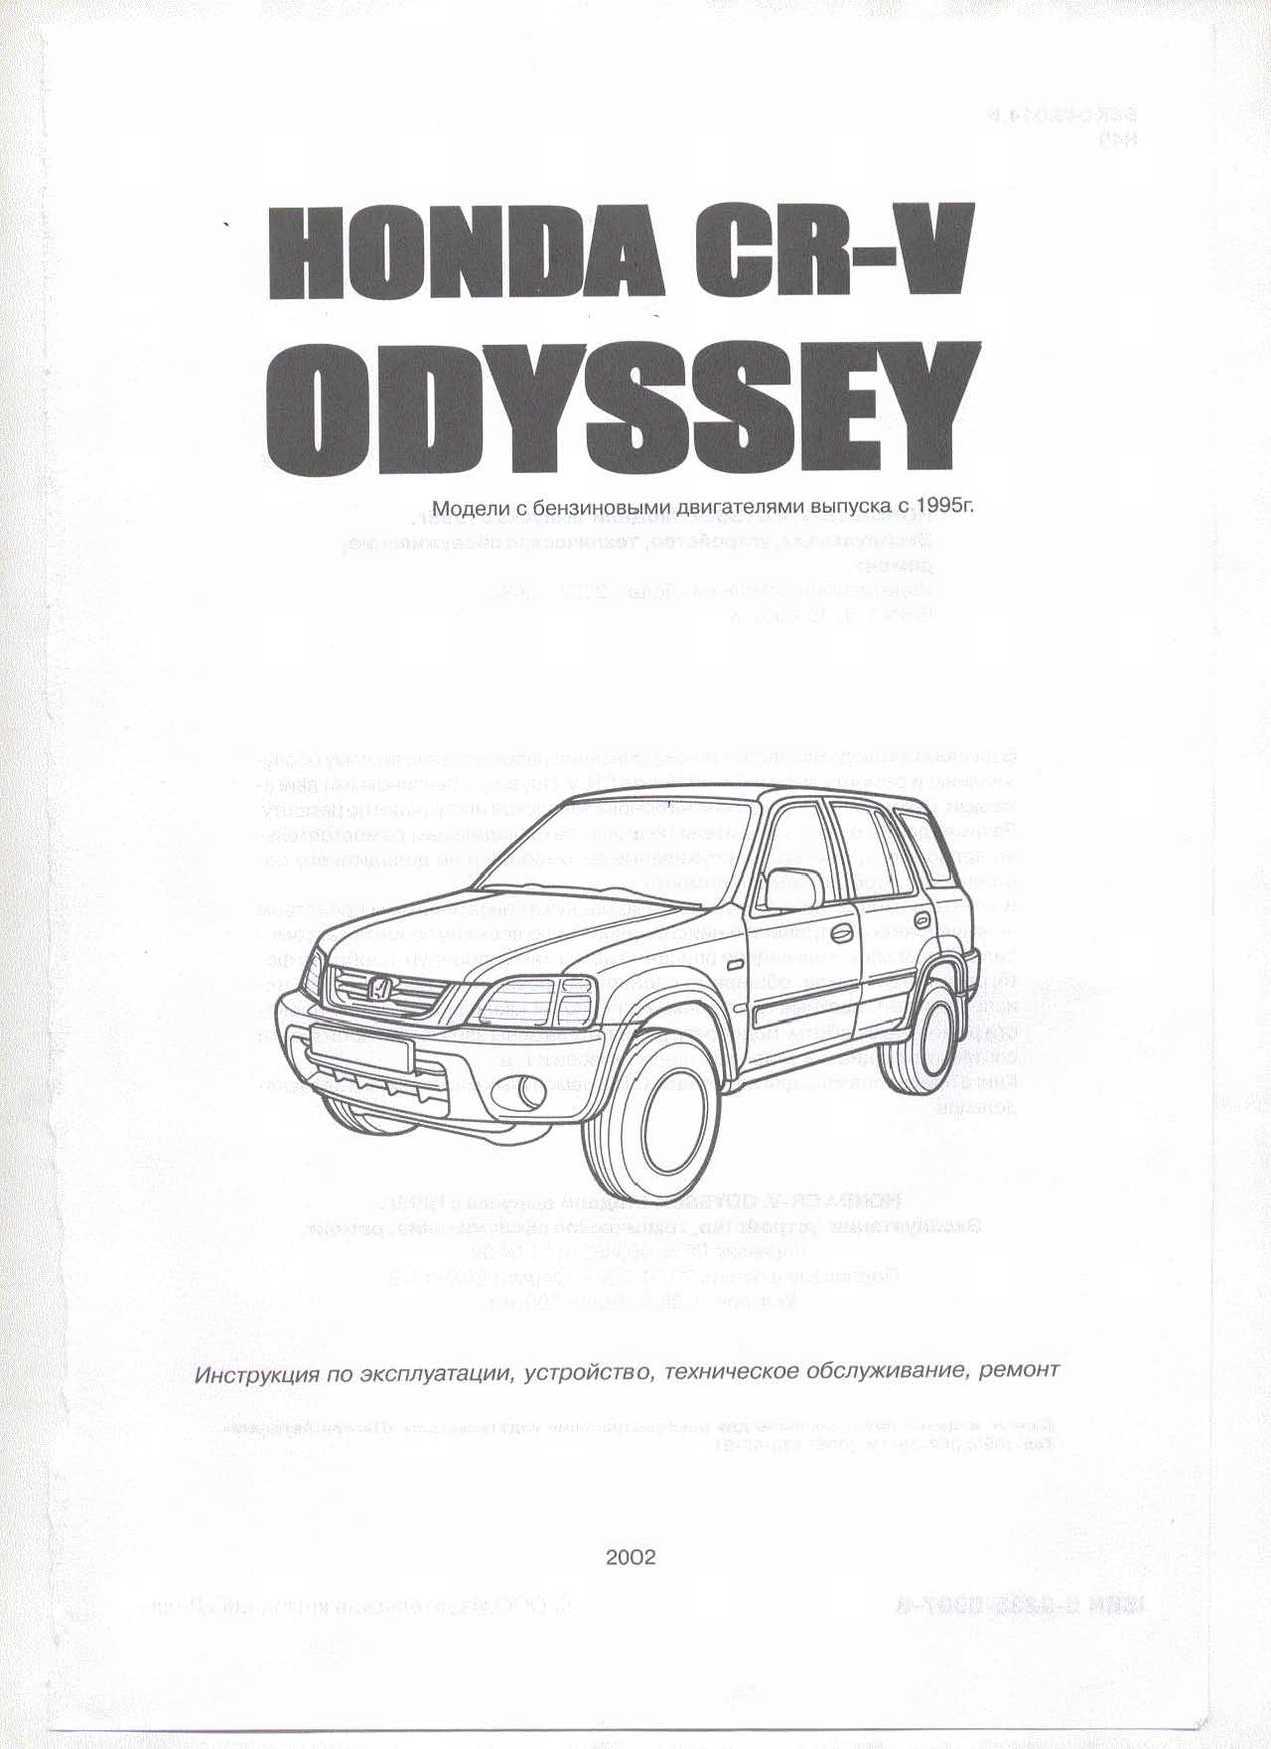 Инструкция Honda CR-V Odyssey